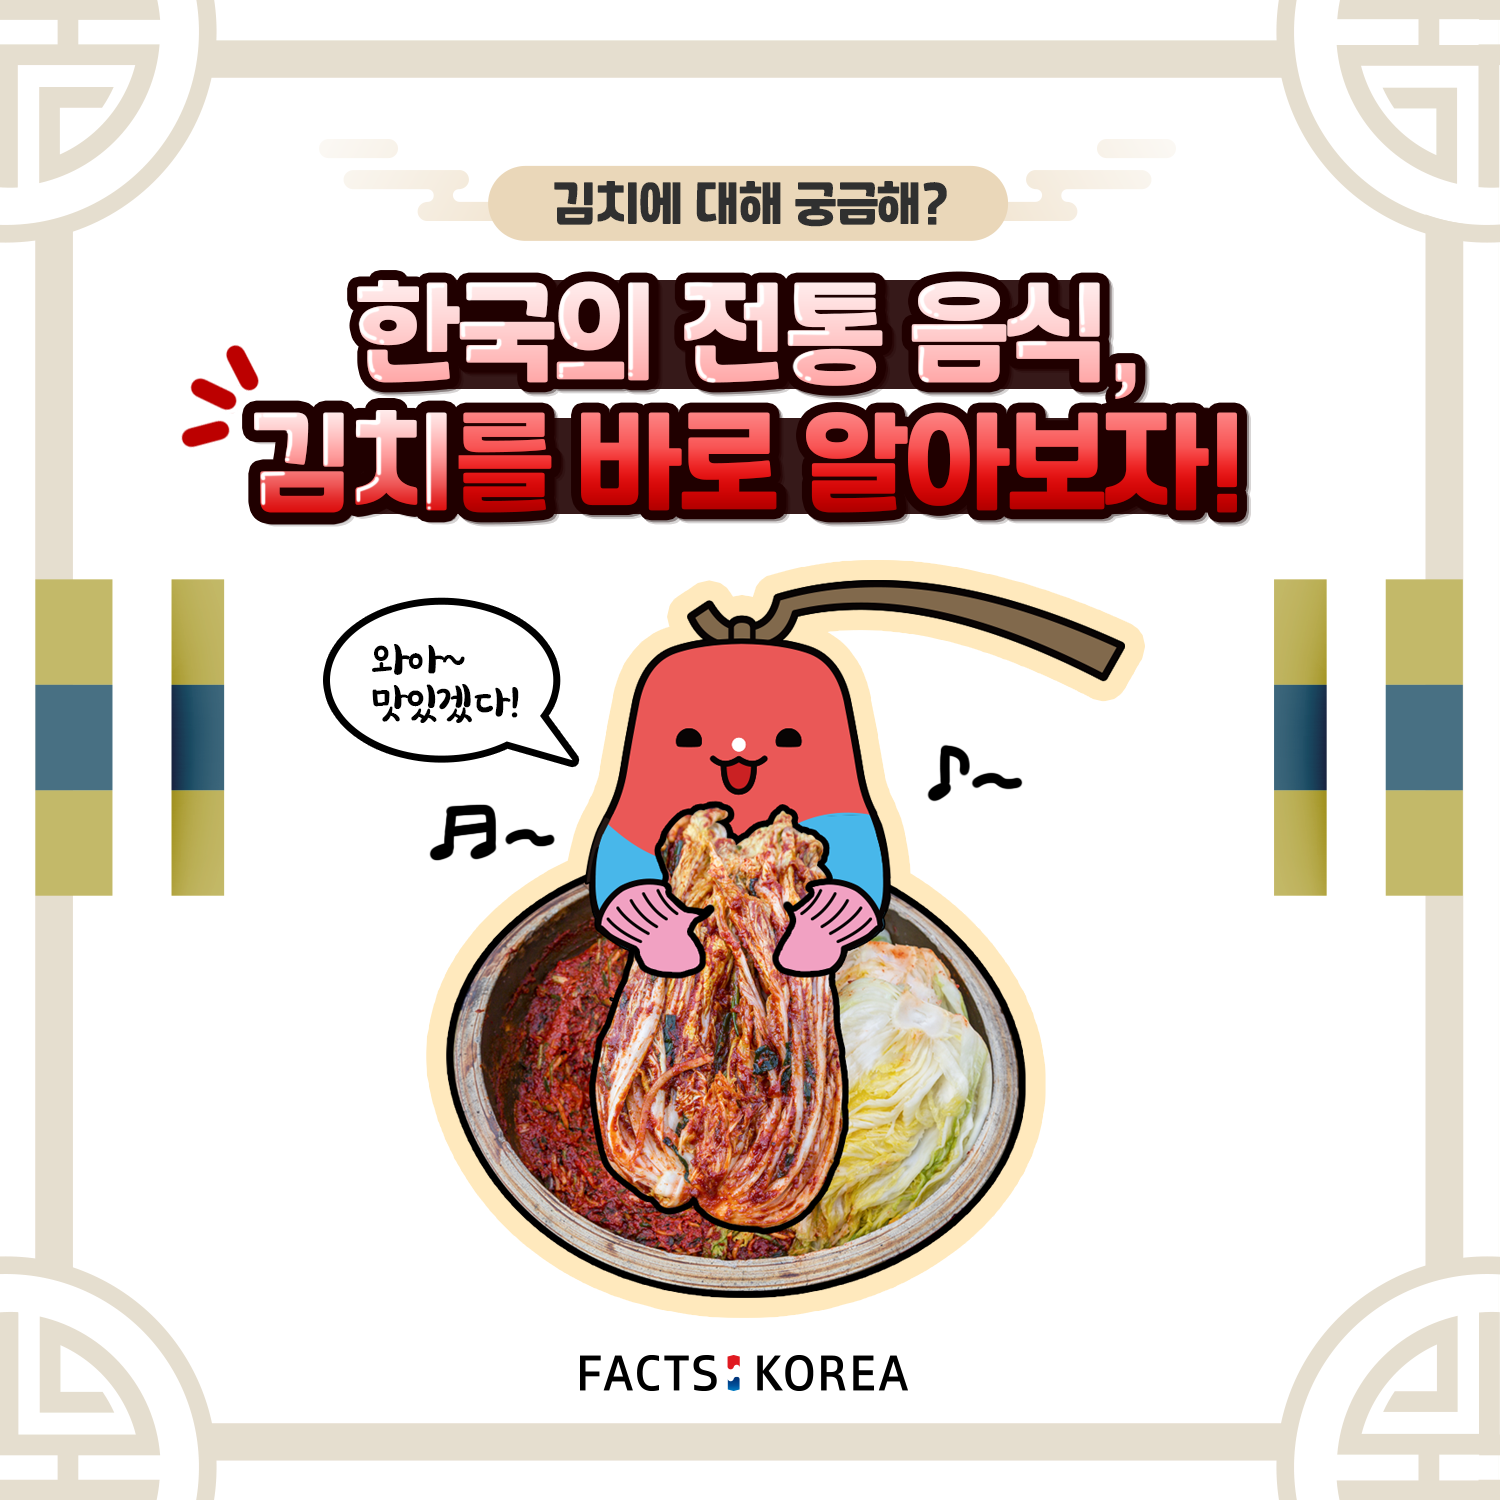 한국의 전통 음식, 김치를 바로 알아보자!